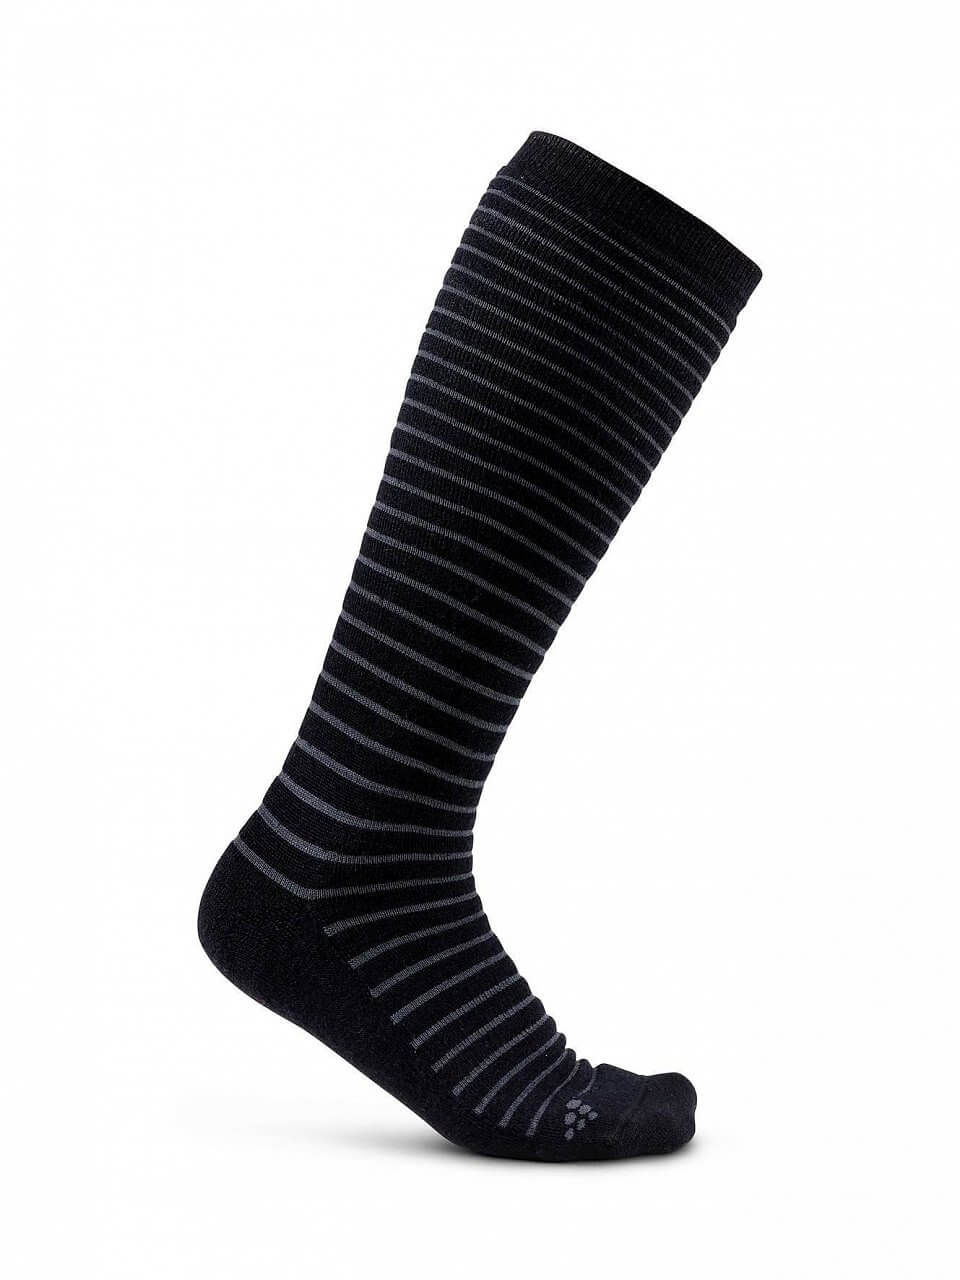 Ponožky Craft Podkolenky Warm Comfort černá